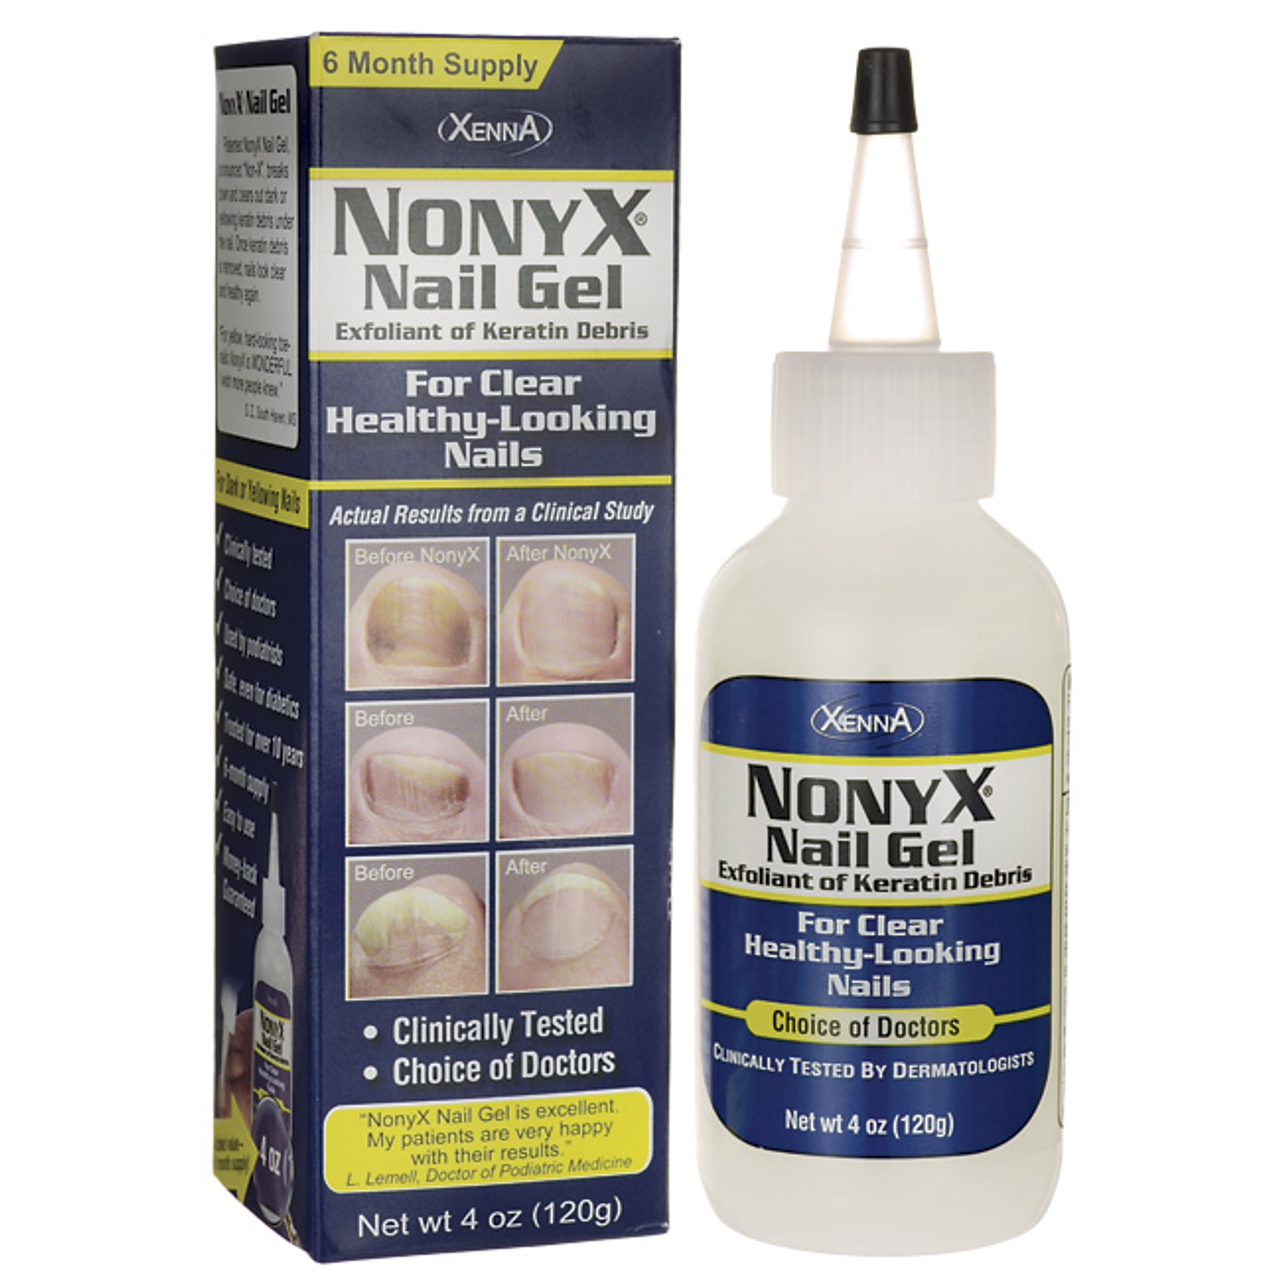 NonyX Nail Gel Treat Nail Fungus for Healthy Nails